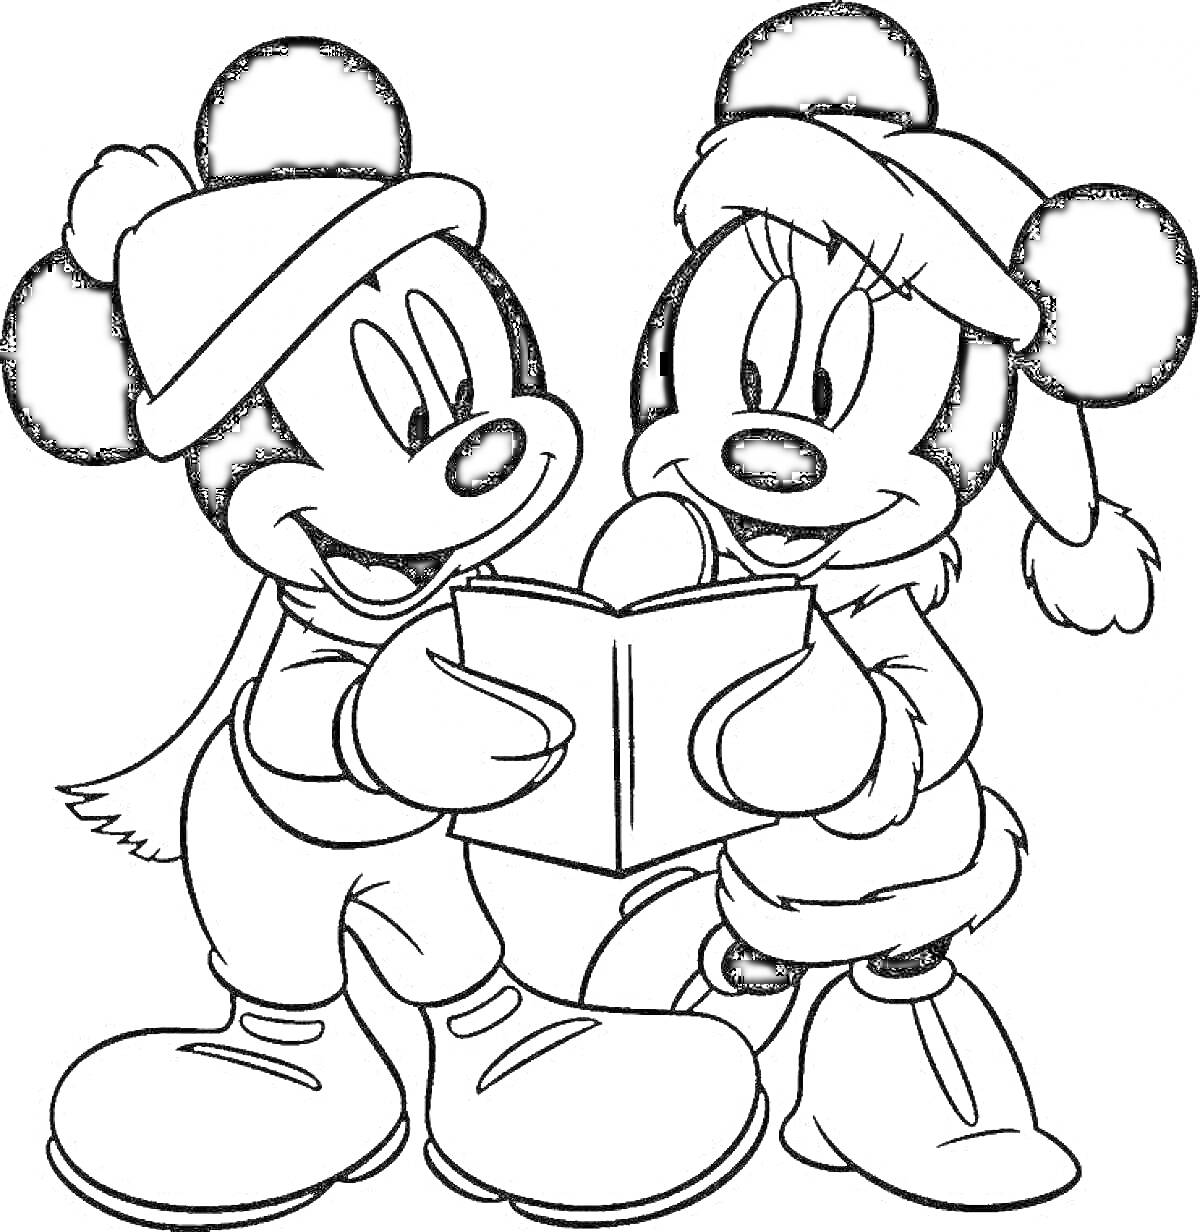 Раскраска Микки и Минни читают книгу в зимней одежде